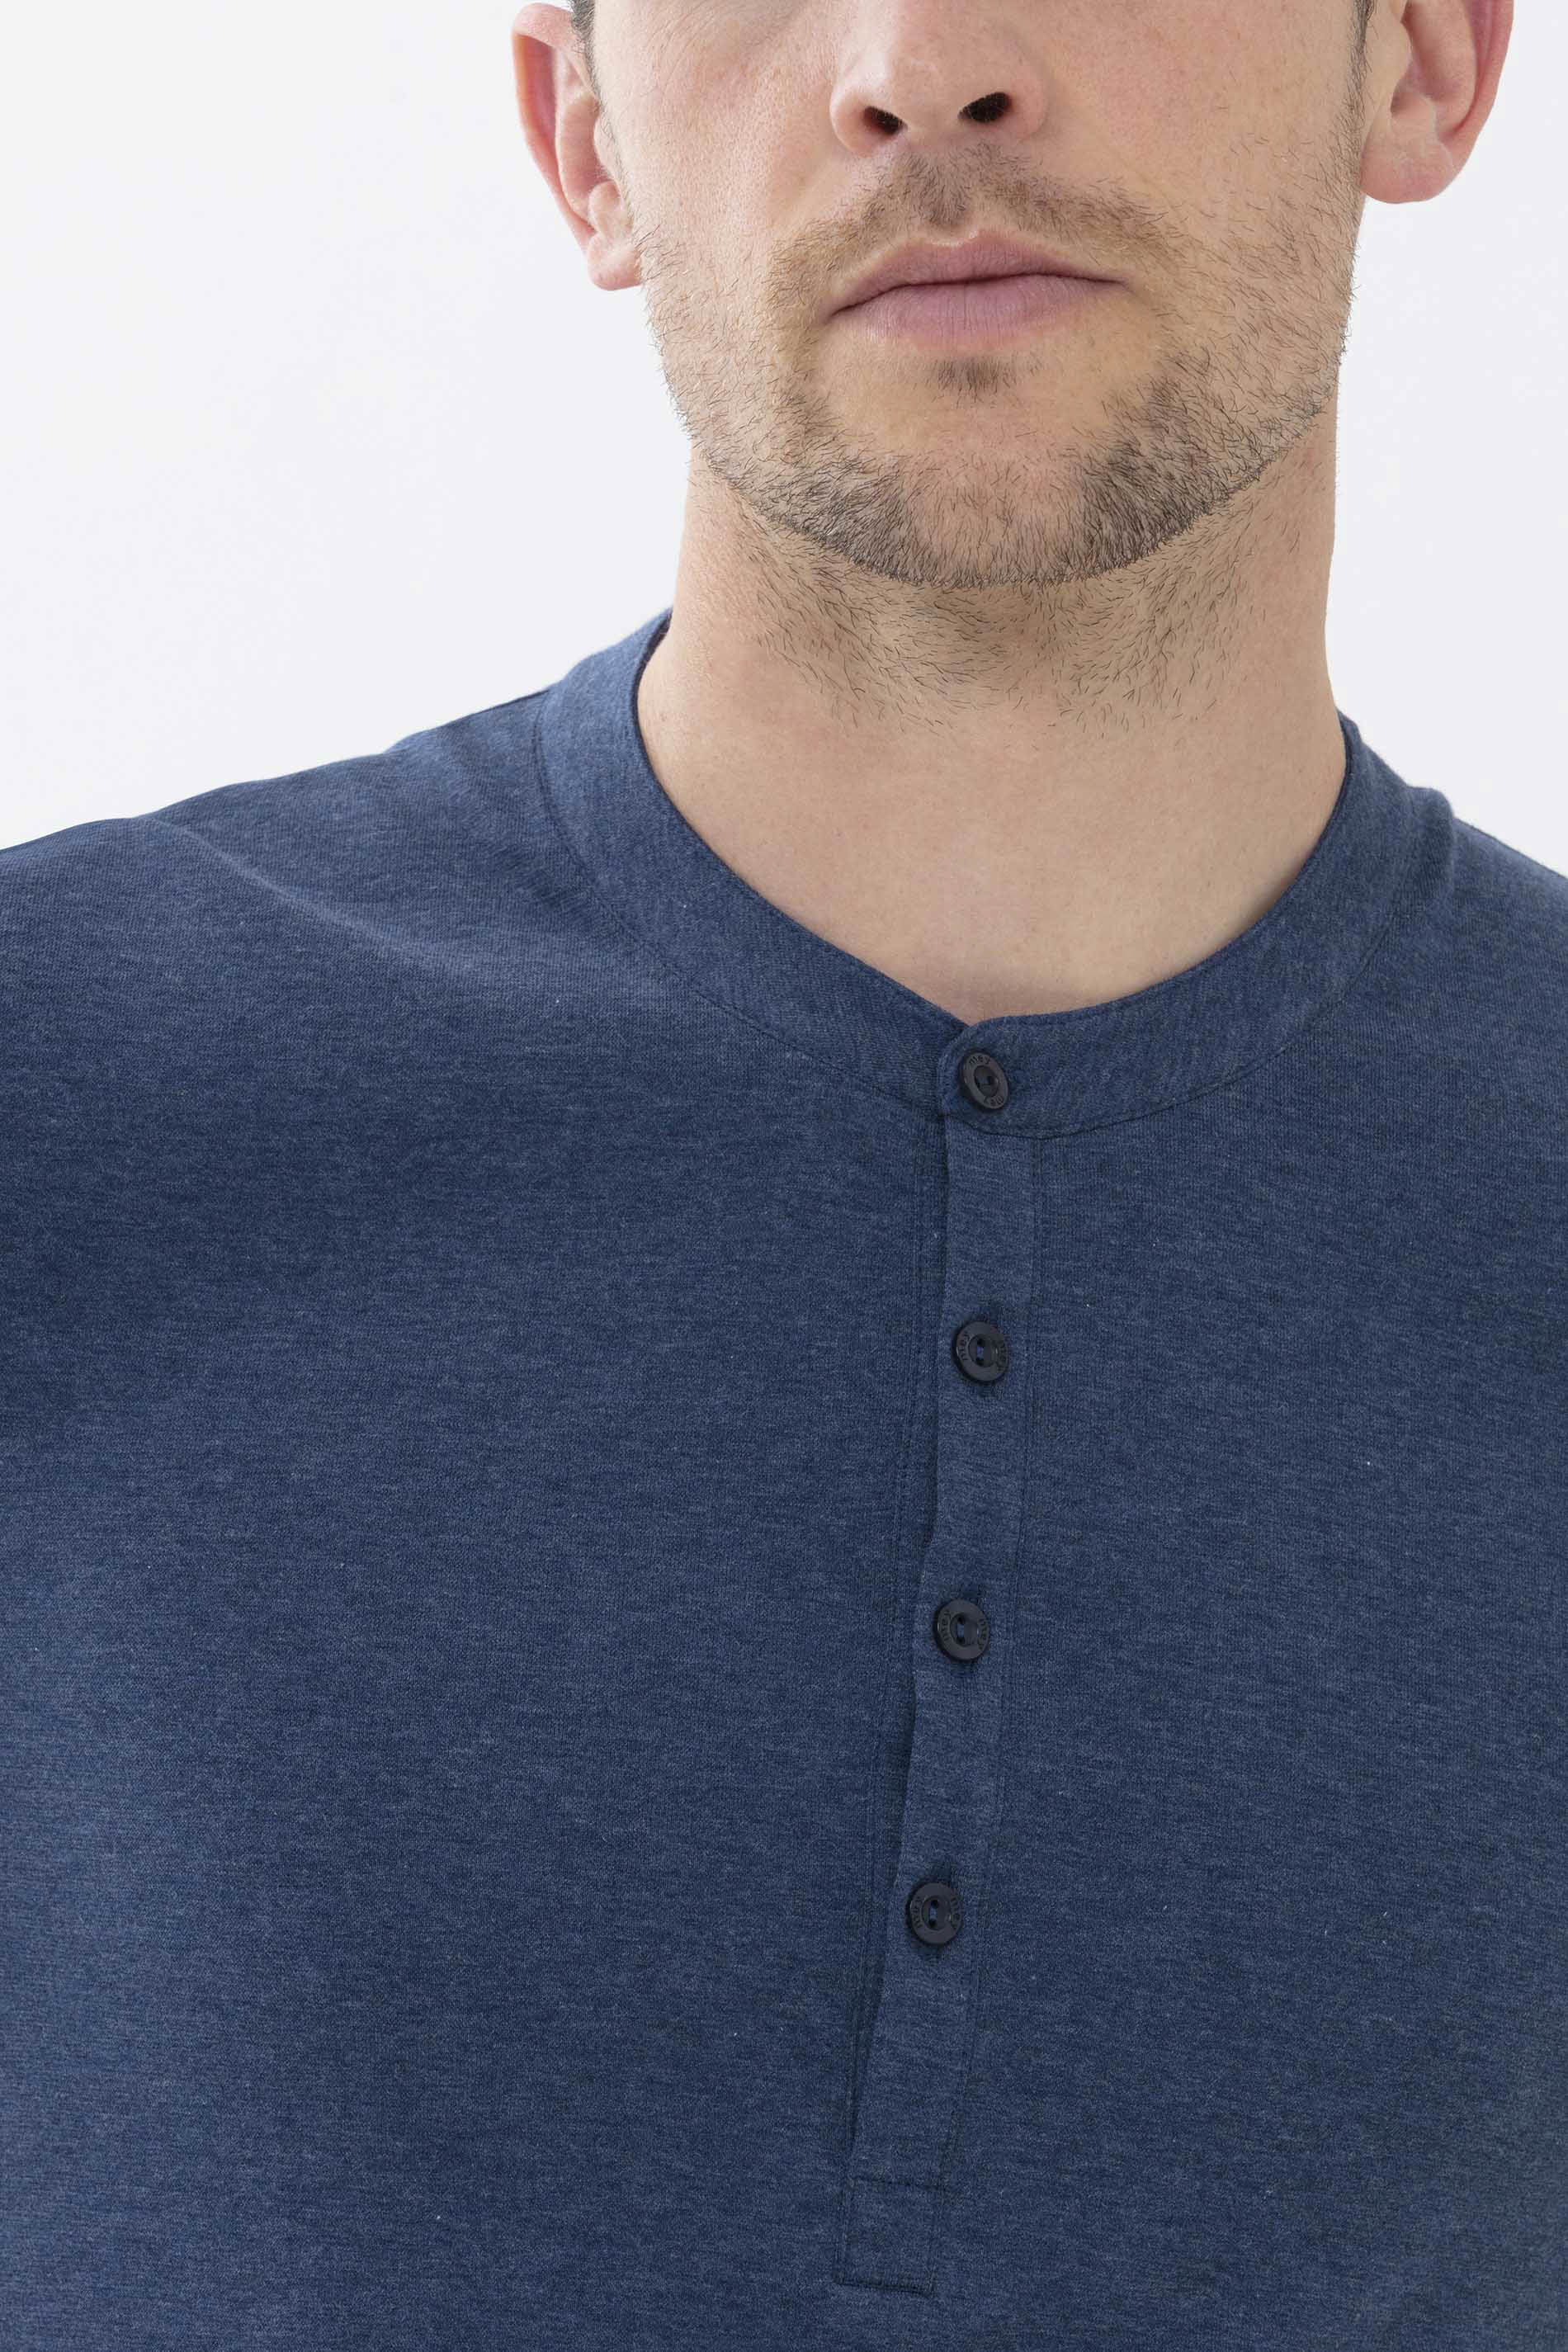 Langarm-Shirt Denim Blue Serie Ringwood Colour Detailansicht 01 | mey®